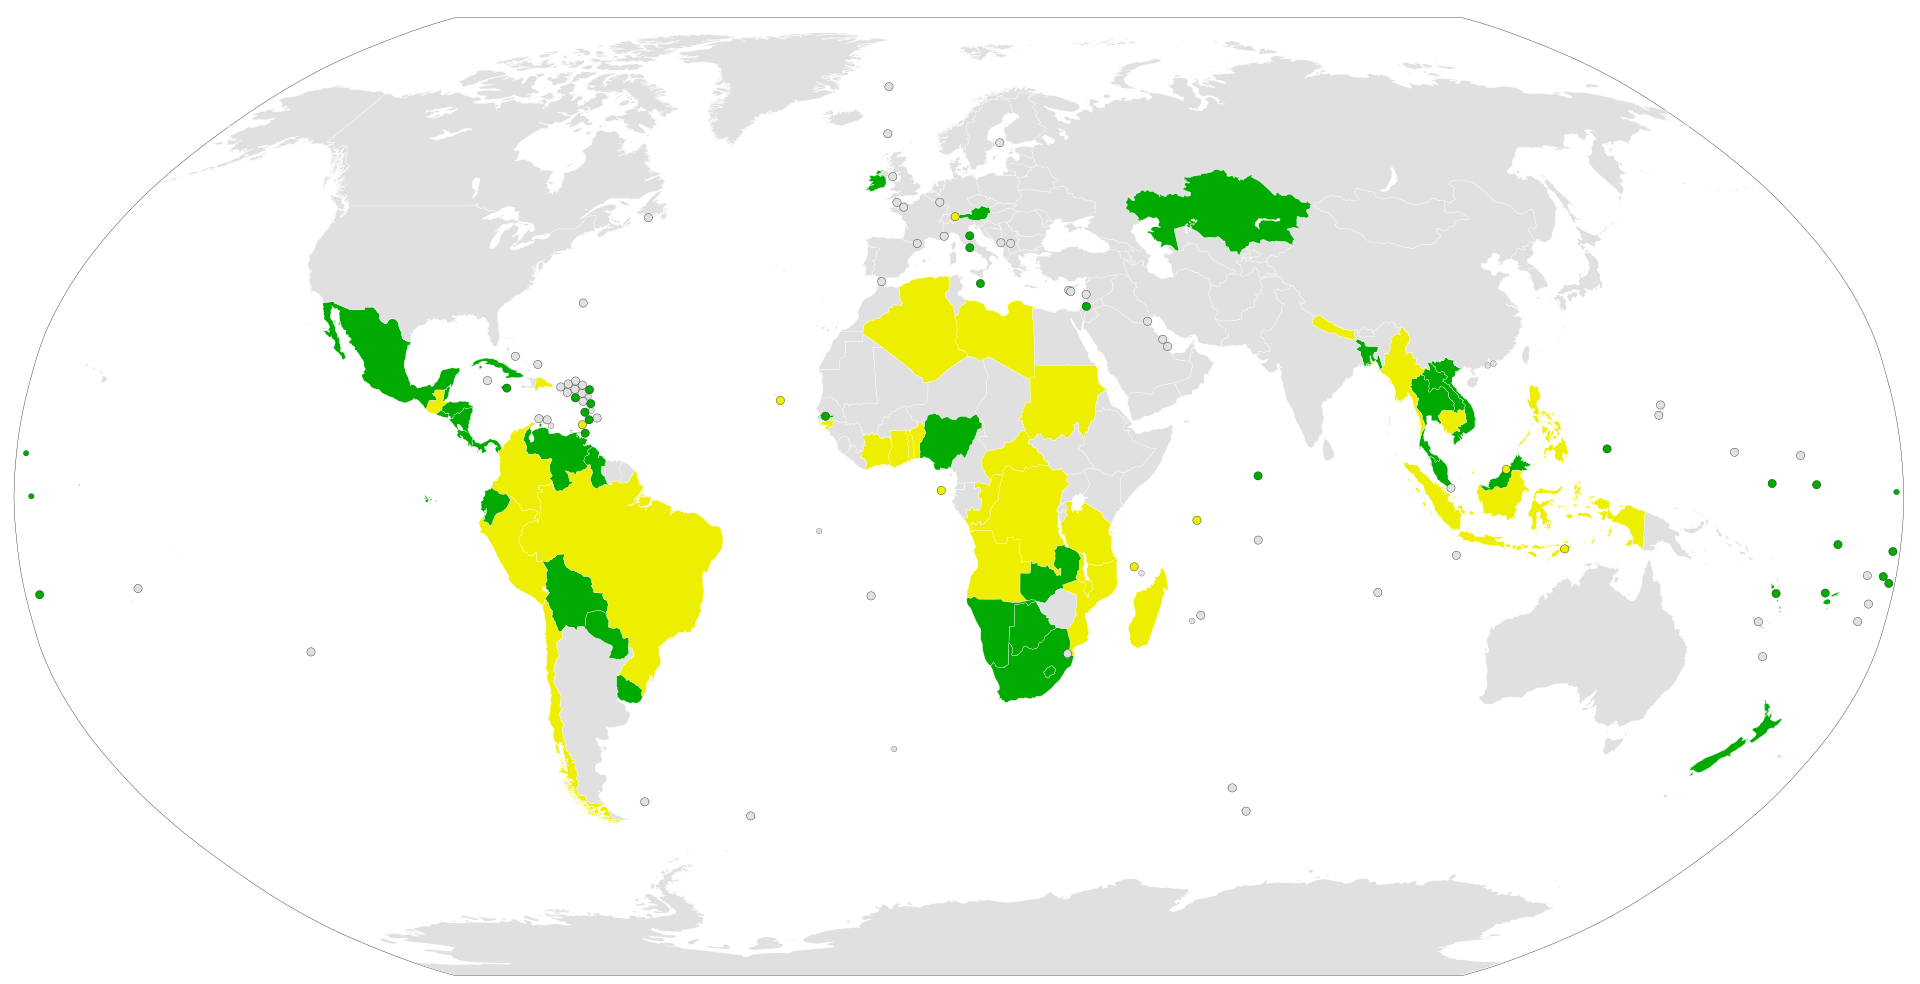 Le nazioni che hanno firmato il Trattato contro le armi nucleari (in giallo) e i cinquanta Paesi che lo hanno ratificato (in verde).